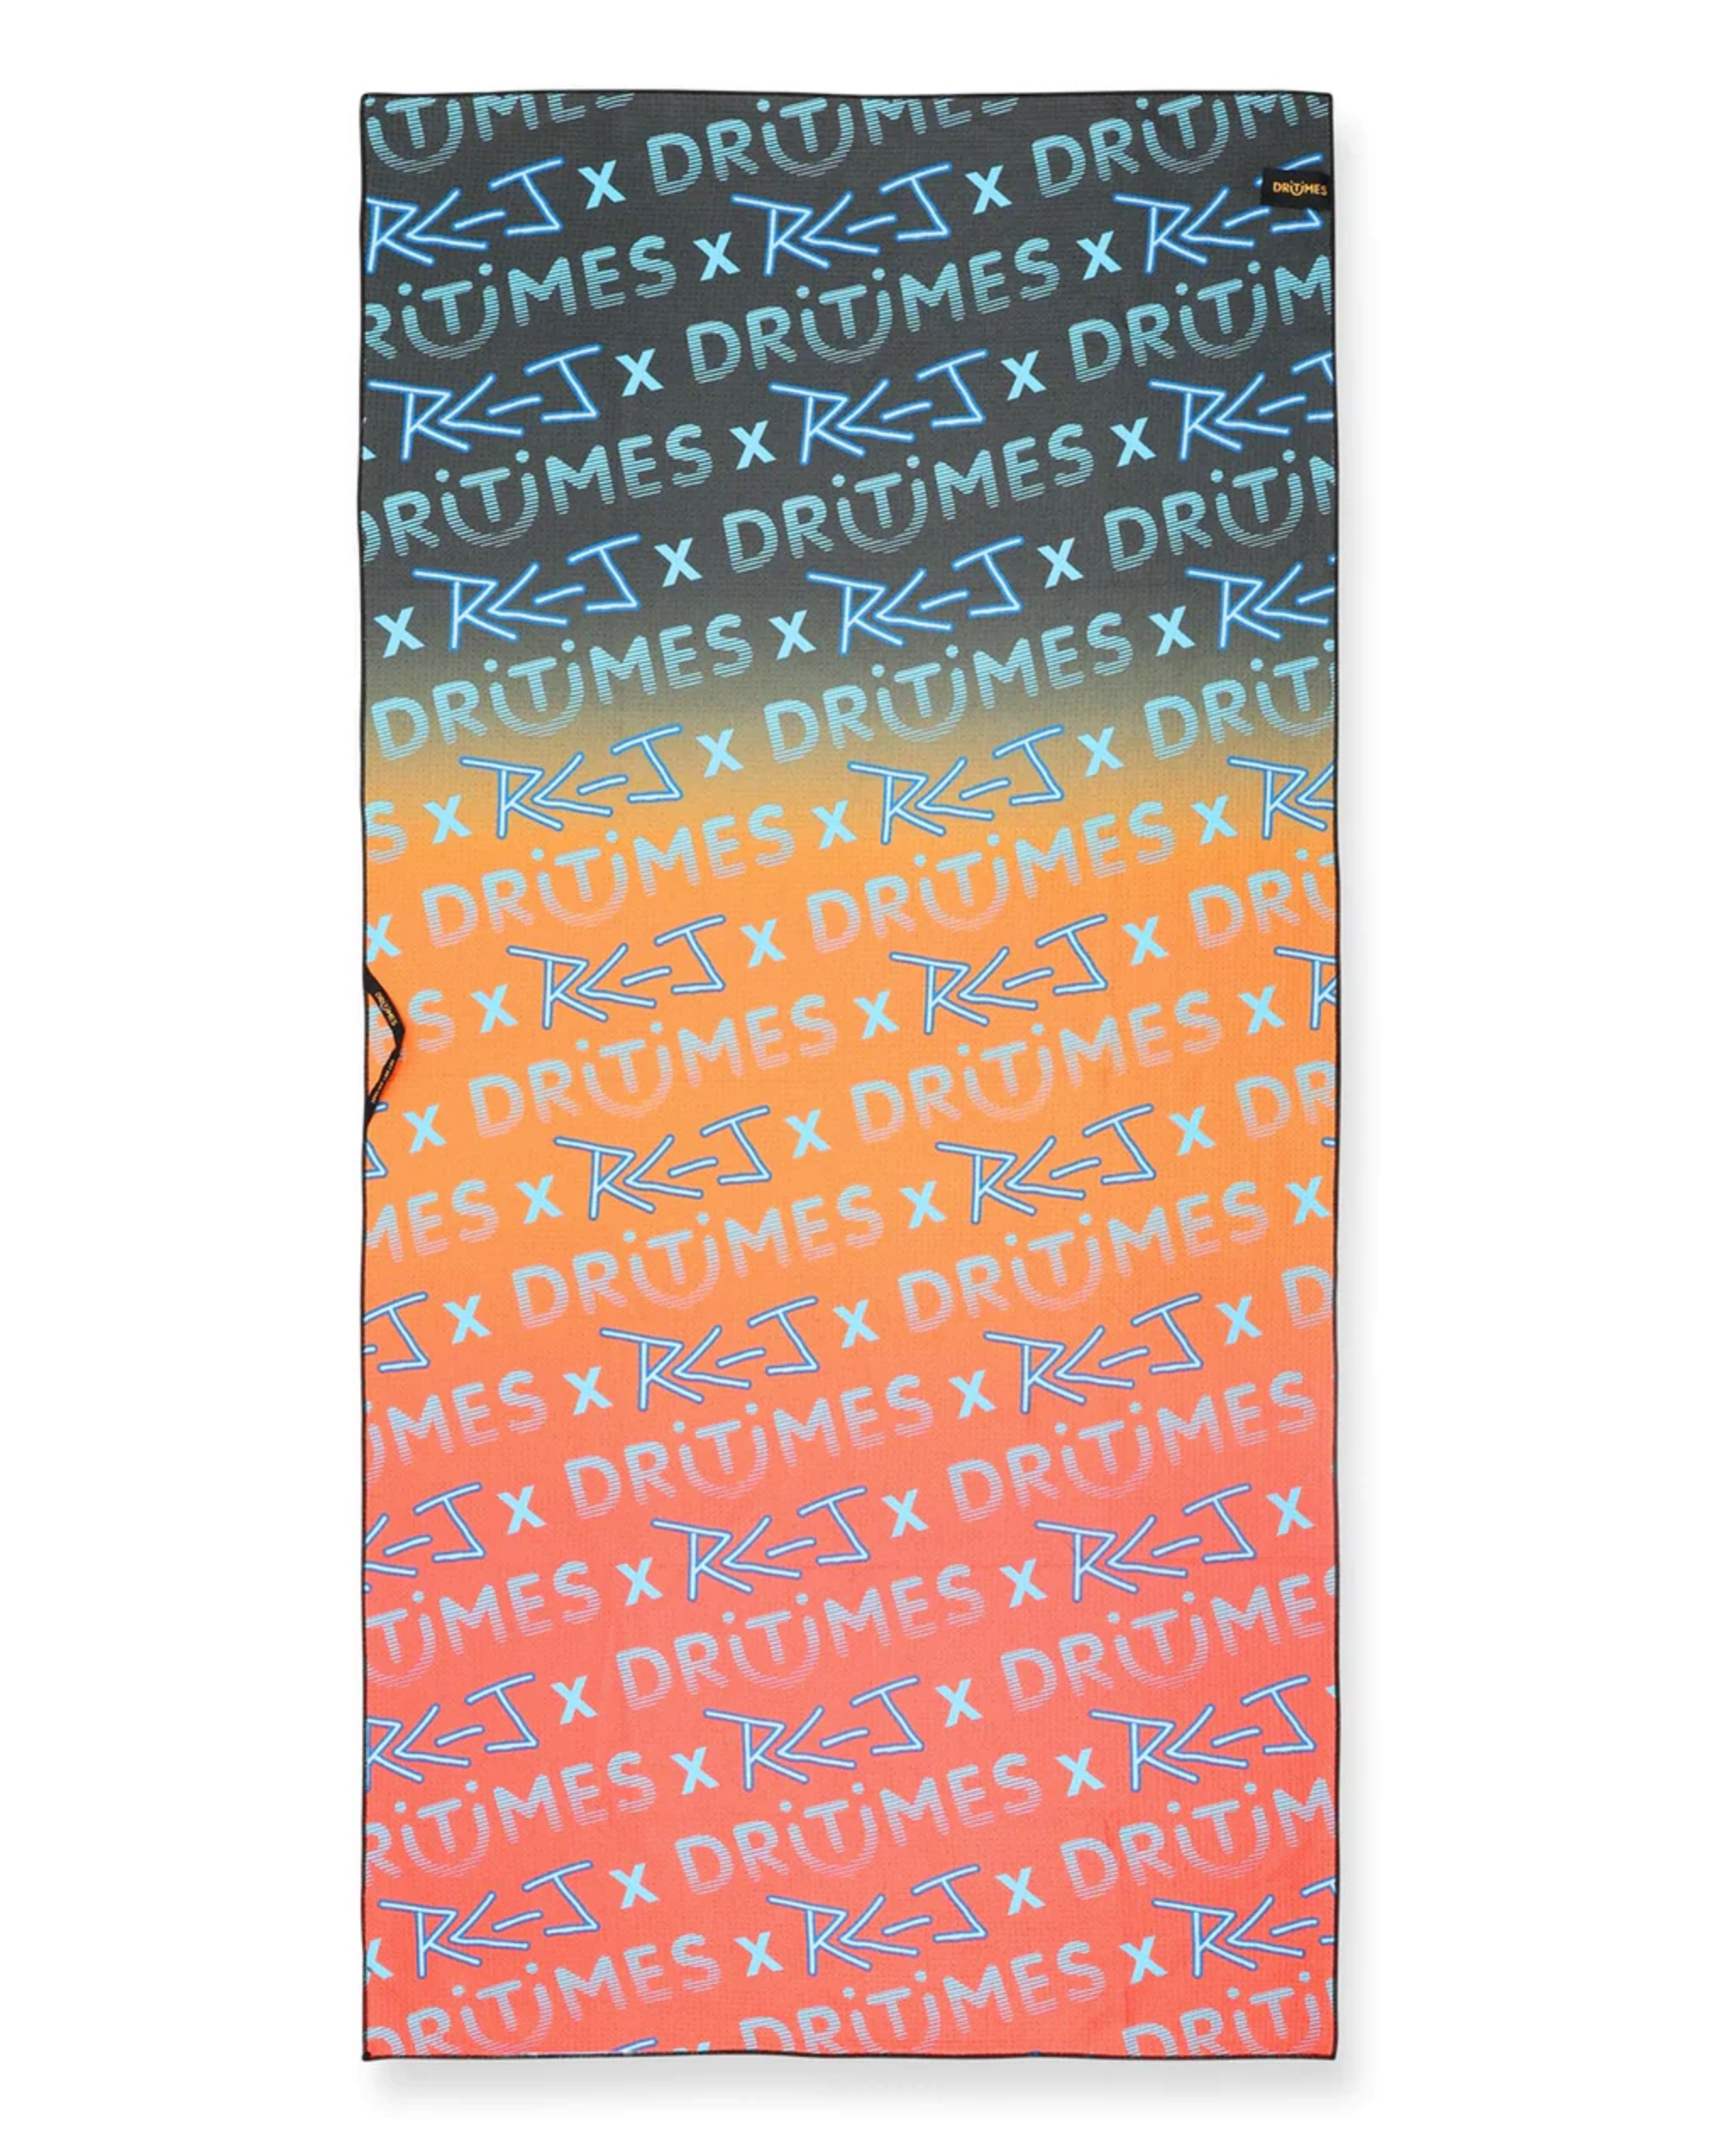 Dritimes Towel - Ross Clarke-Jones Dark Bones